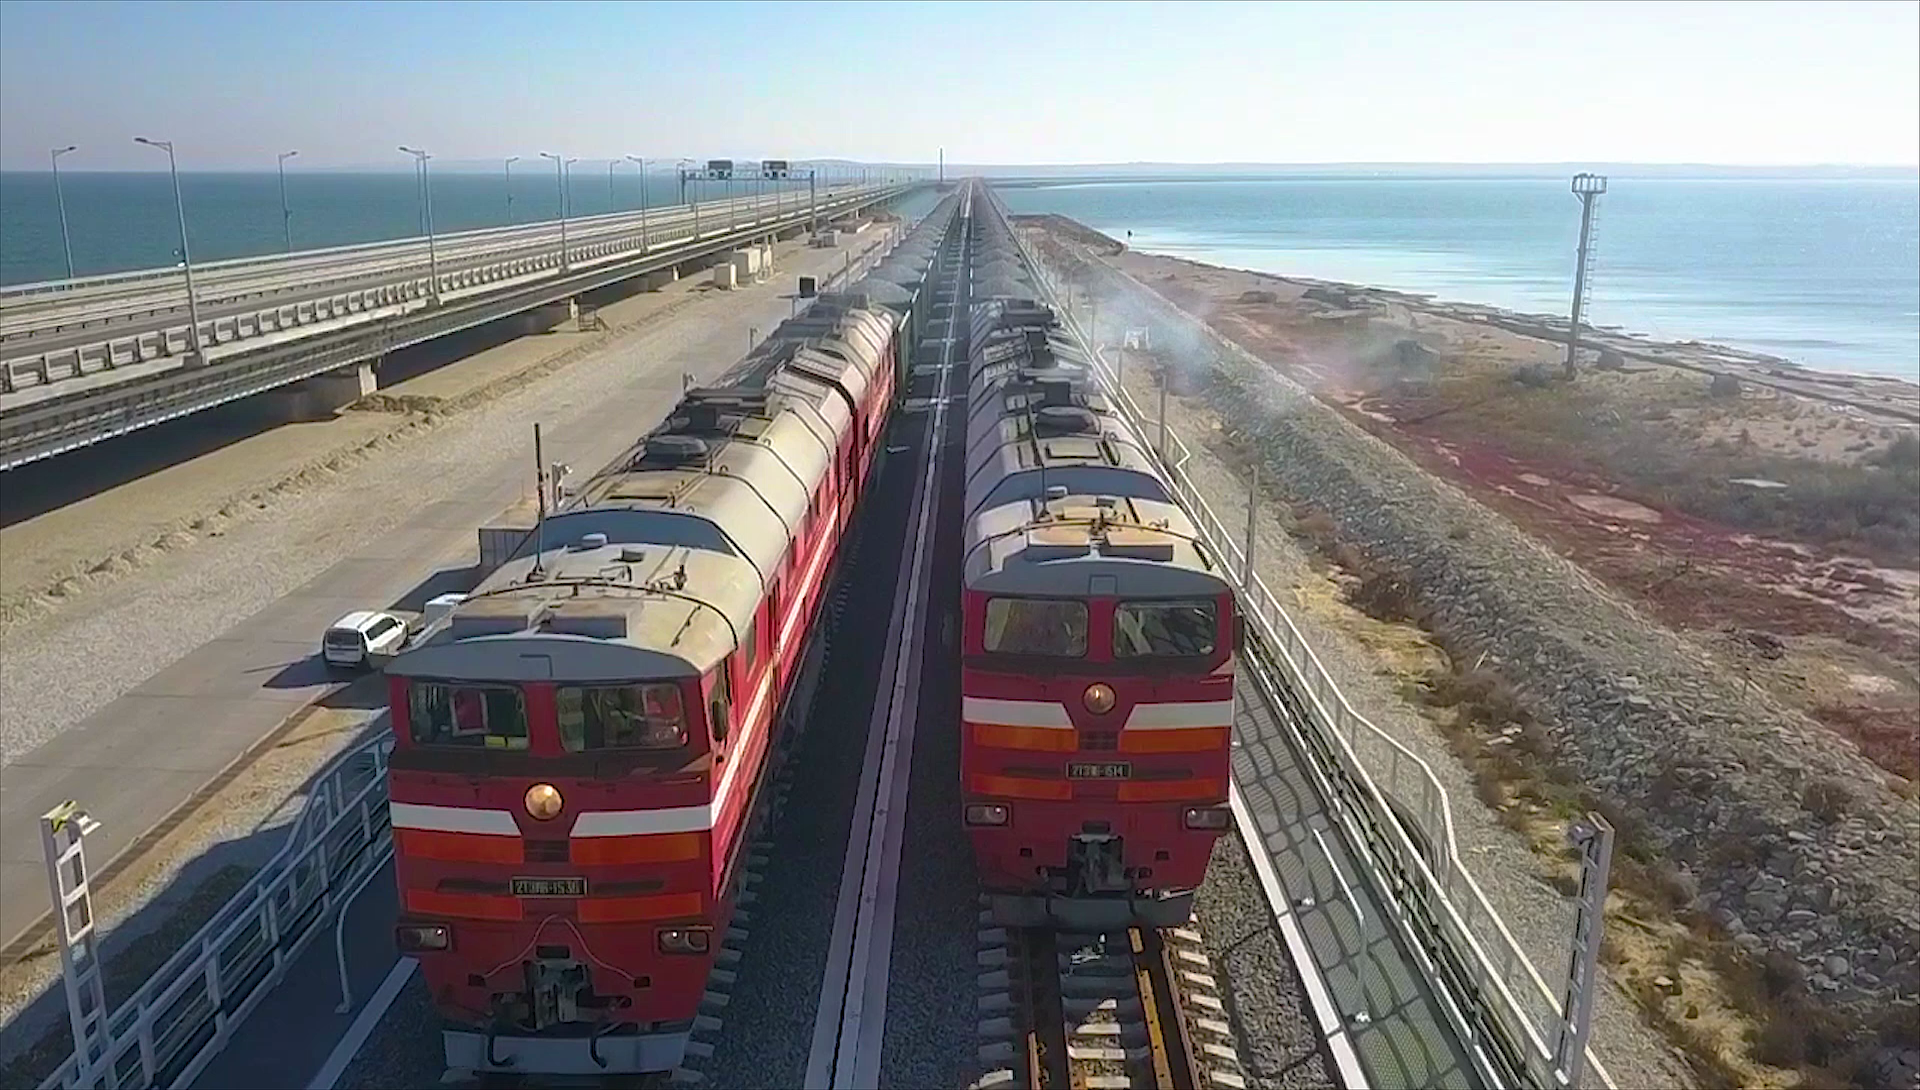 Сколько времени едет поезд по крымскому мосту